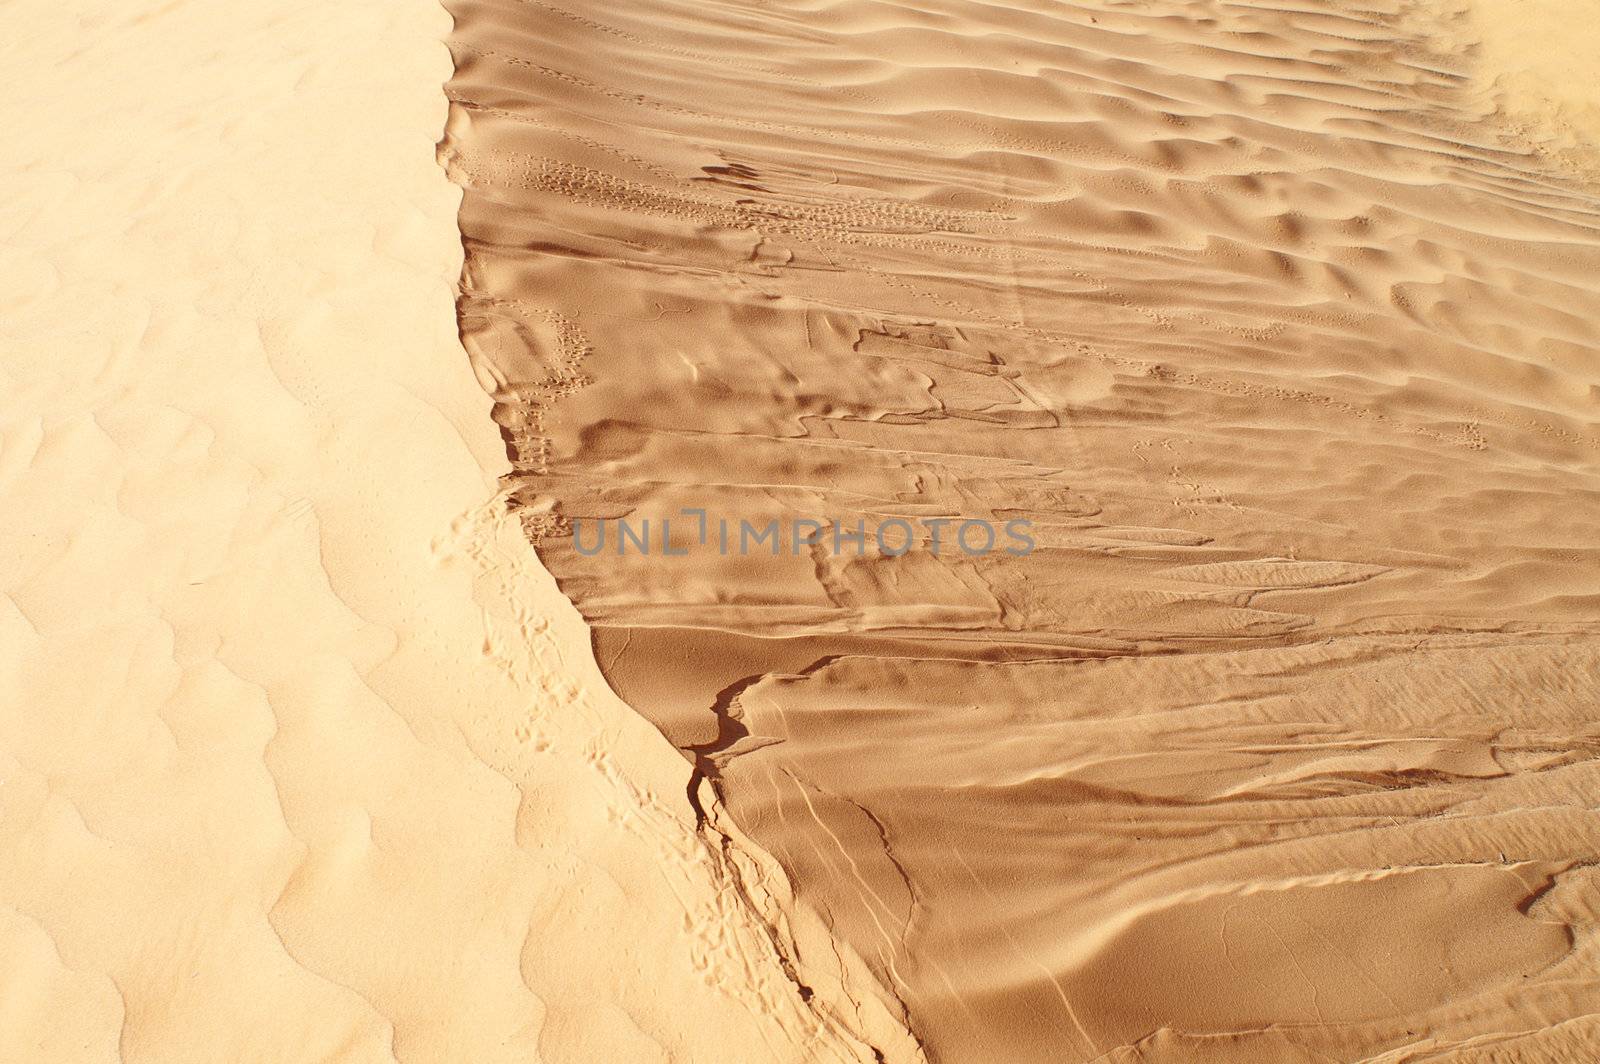 Desert by photochecker